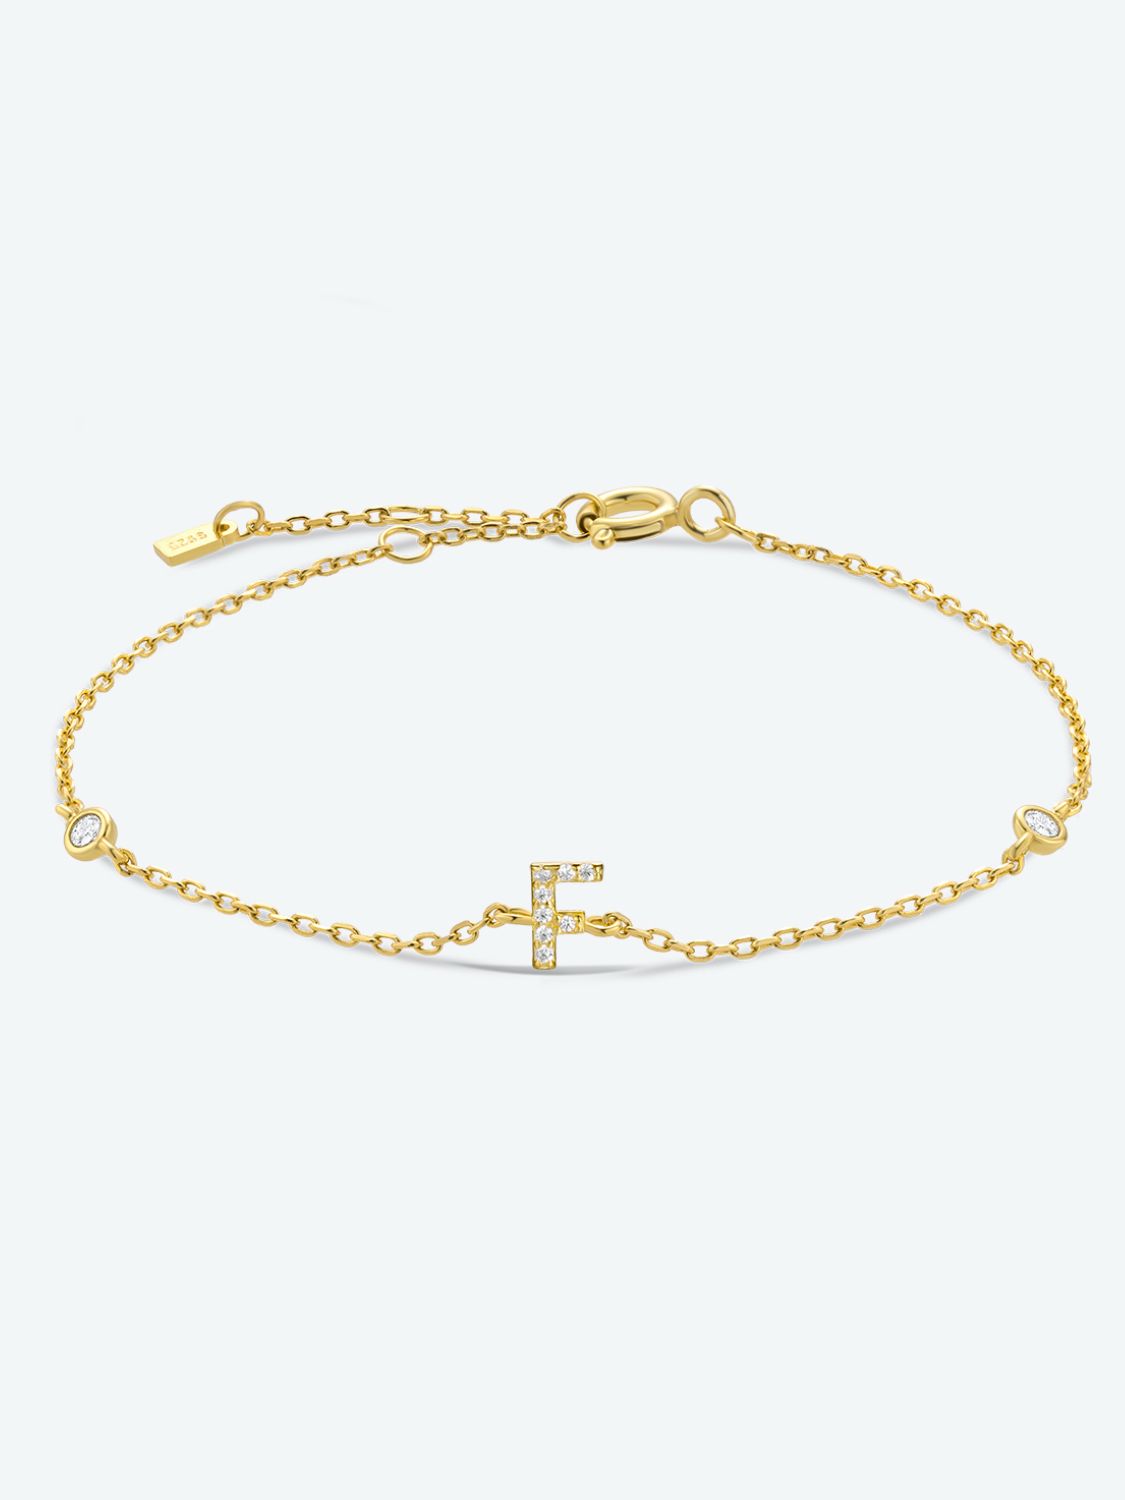 A To F Zircon 925 Sterling Silver Bracelet - F-Gold / One Size - Women’s Jewelry - Bracelets - 31 - 2024